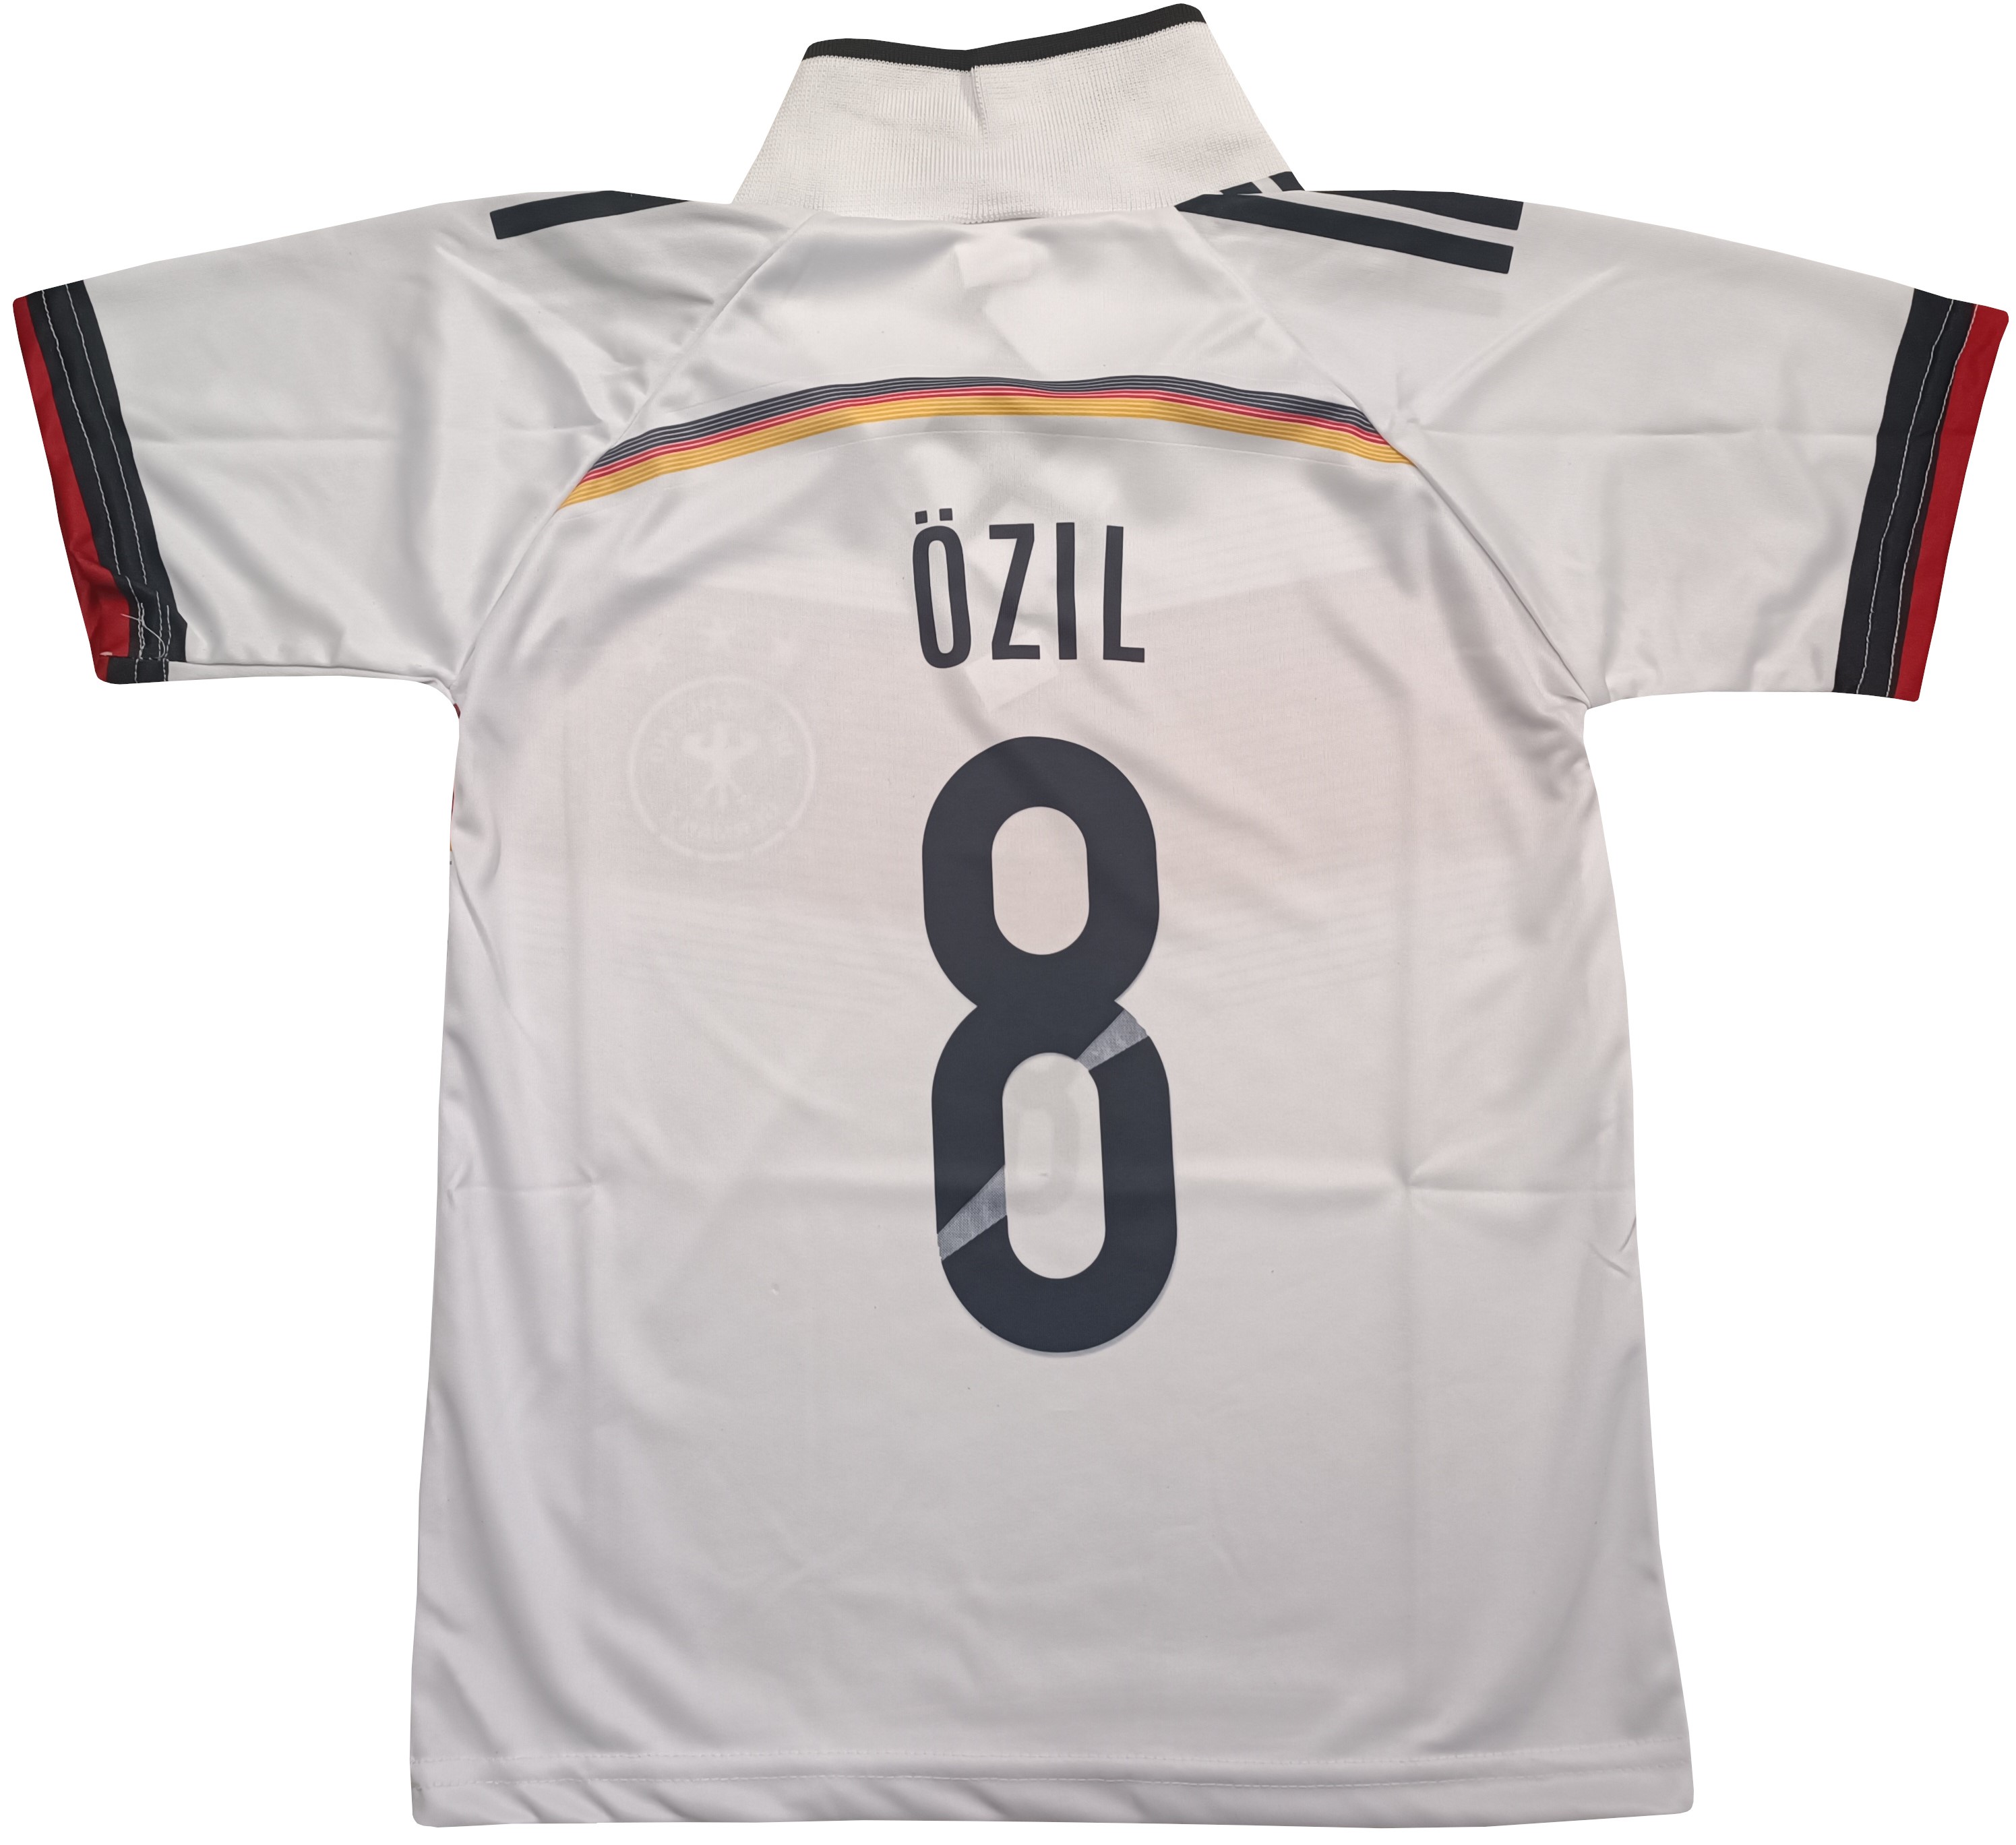 Fotbalový dres Ozil 8 Německo - výprodej Velikost: 134 cm (6-7 let) povánoční sleva